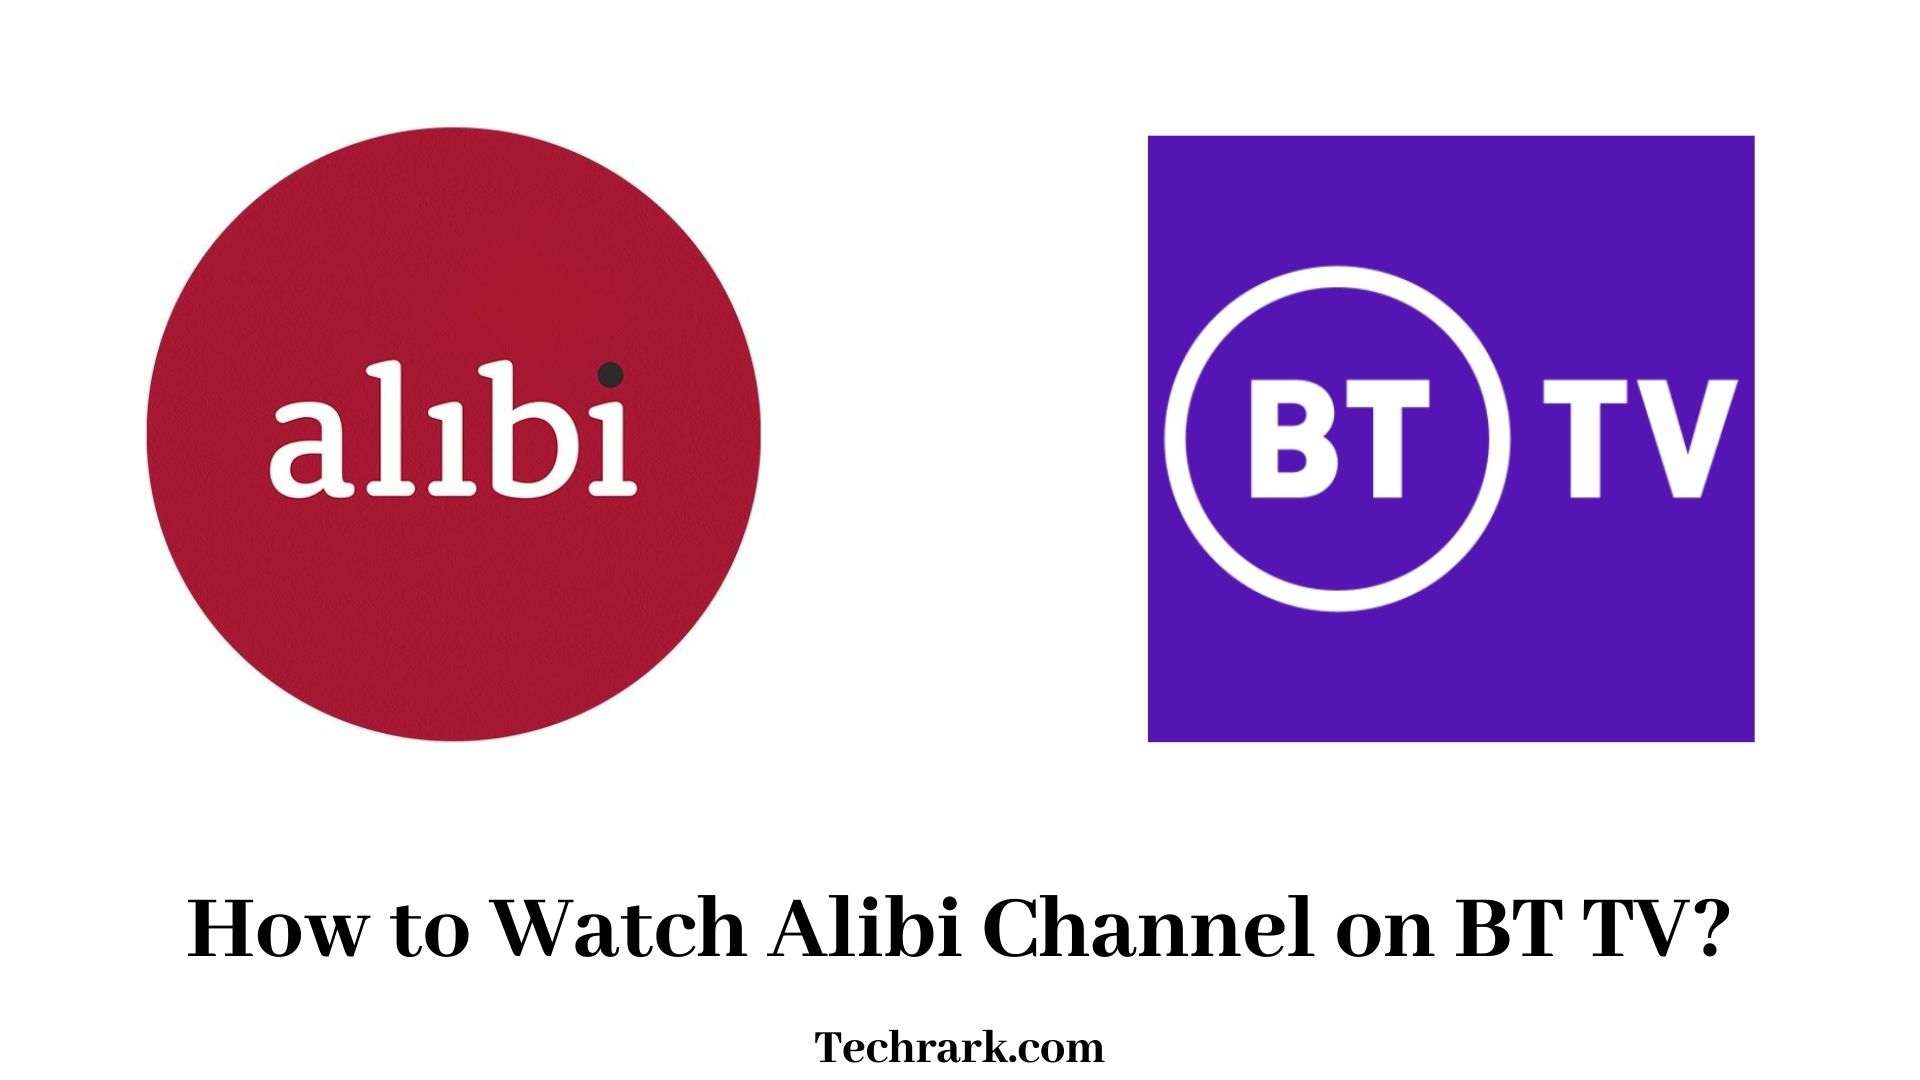 Alibi on BT TV